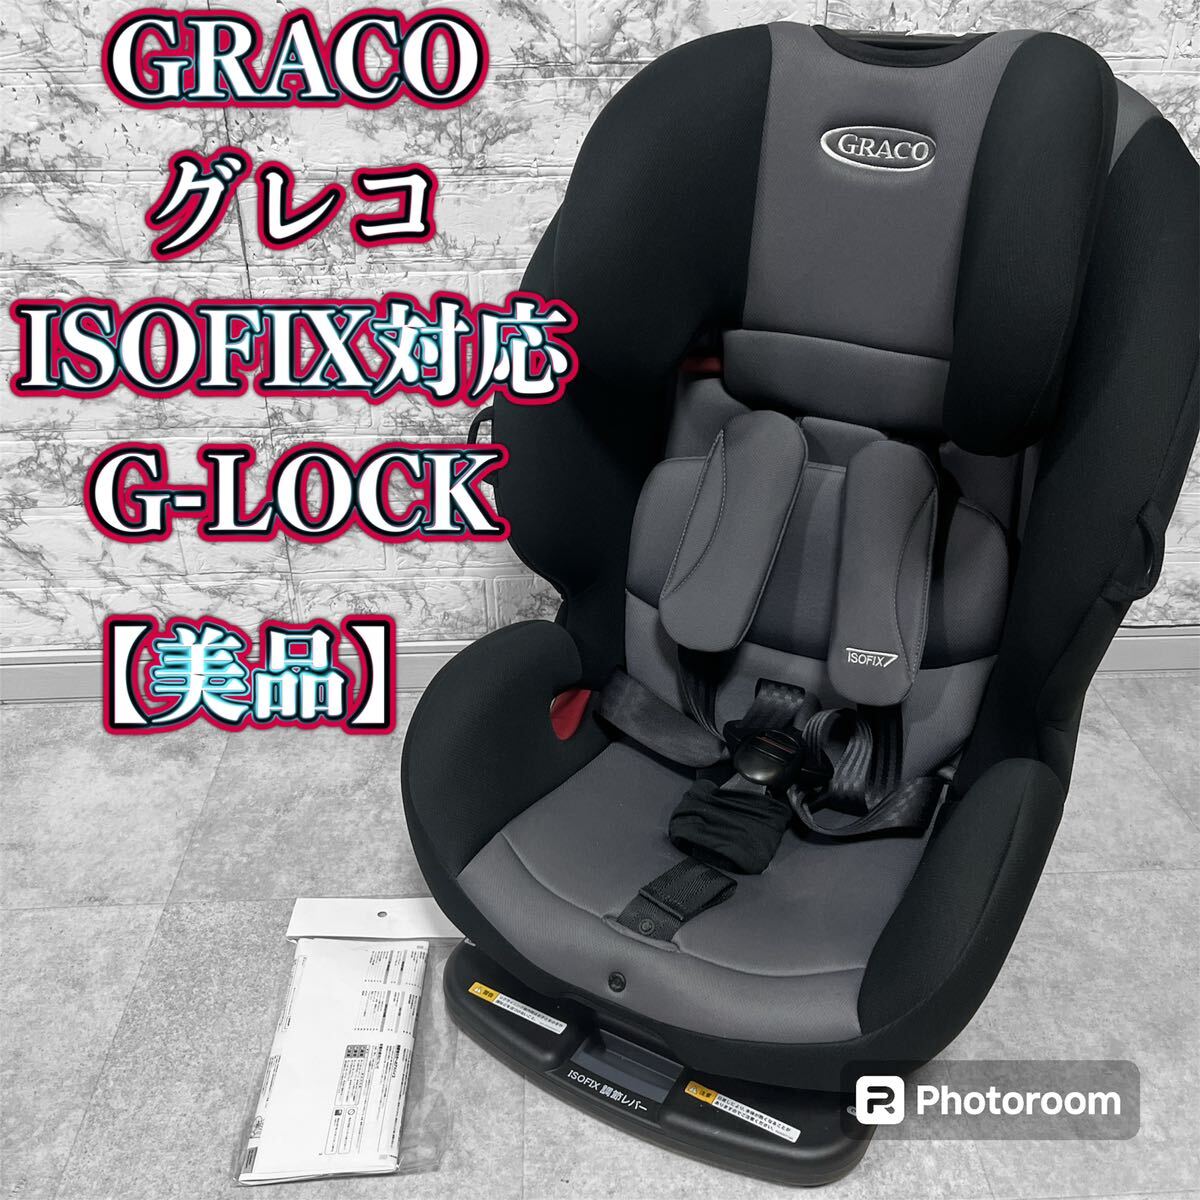 GRACO ISOFIX соответствует детский & детское сиденье G-LOCK[ прекрасный товар ]